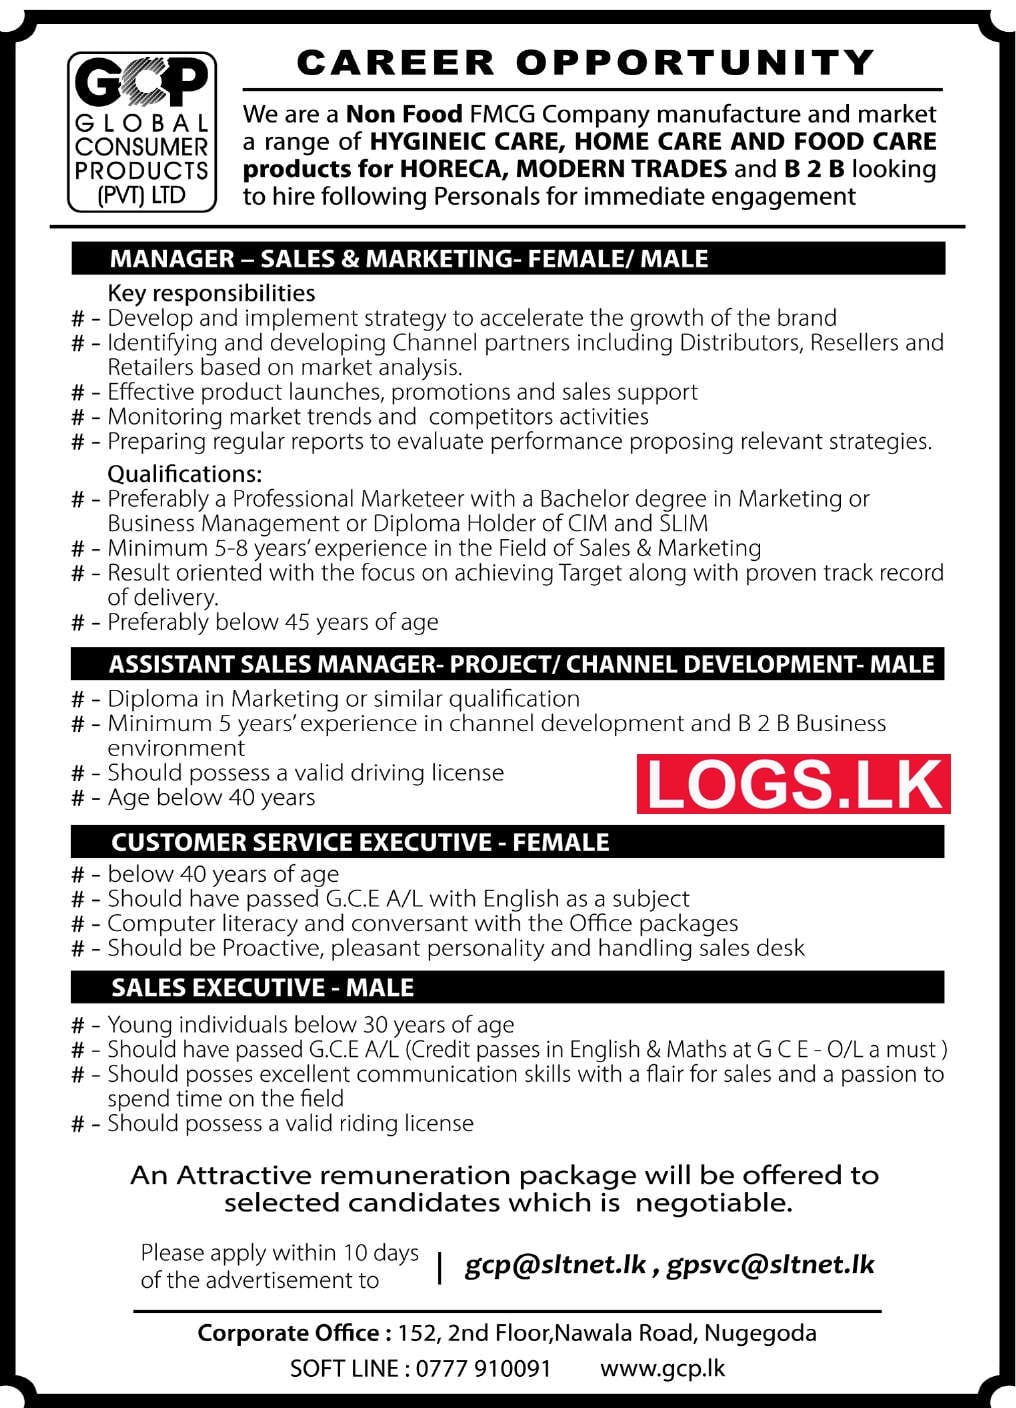 Global Consumer Products (Pvt) Ltd Job Vacancies 2023 Application Form, Details Download